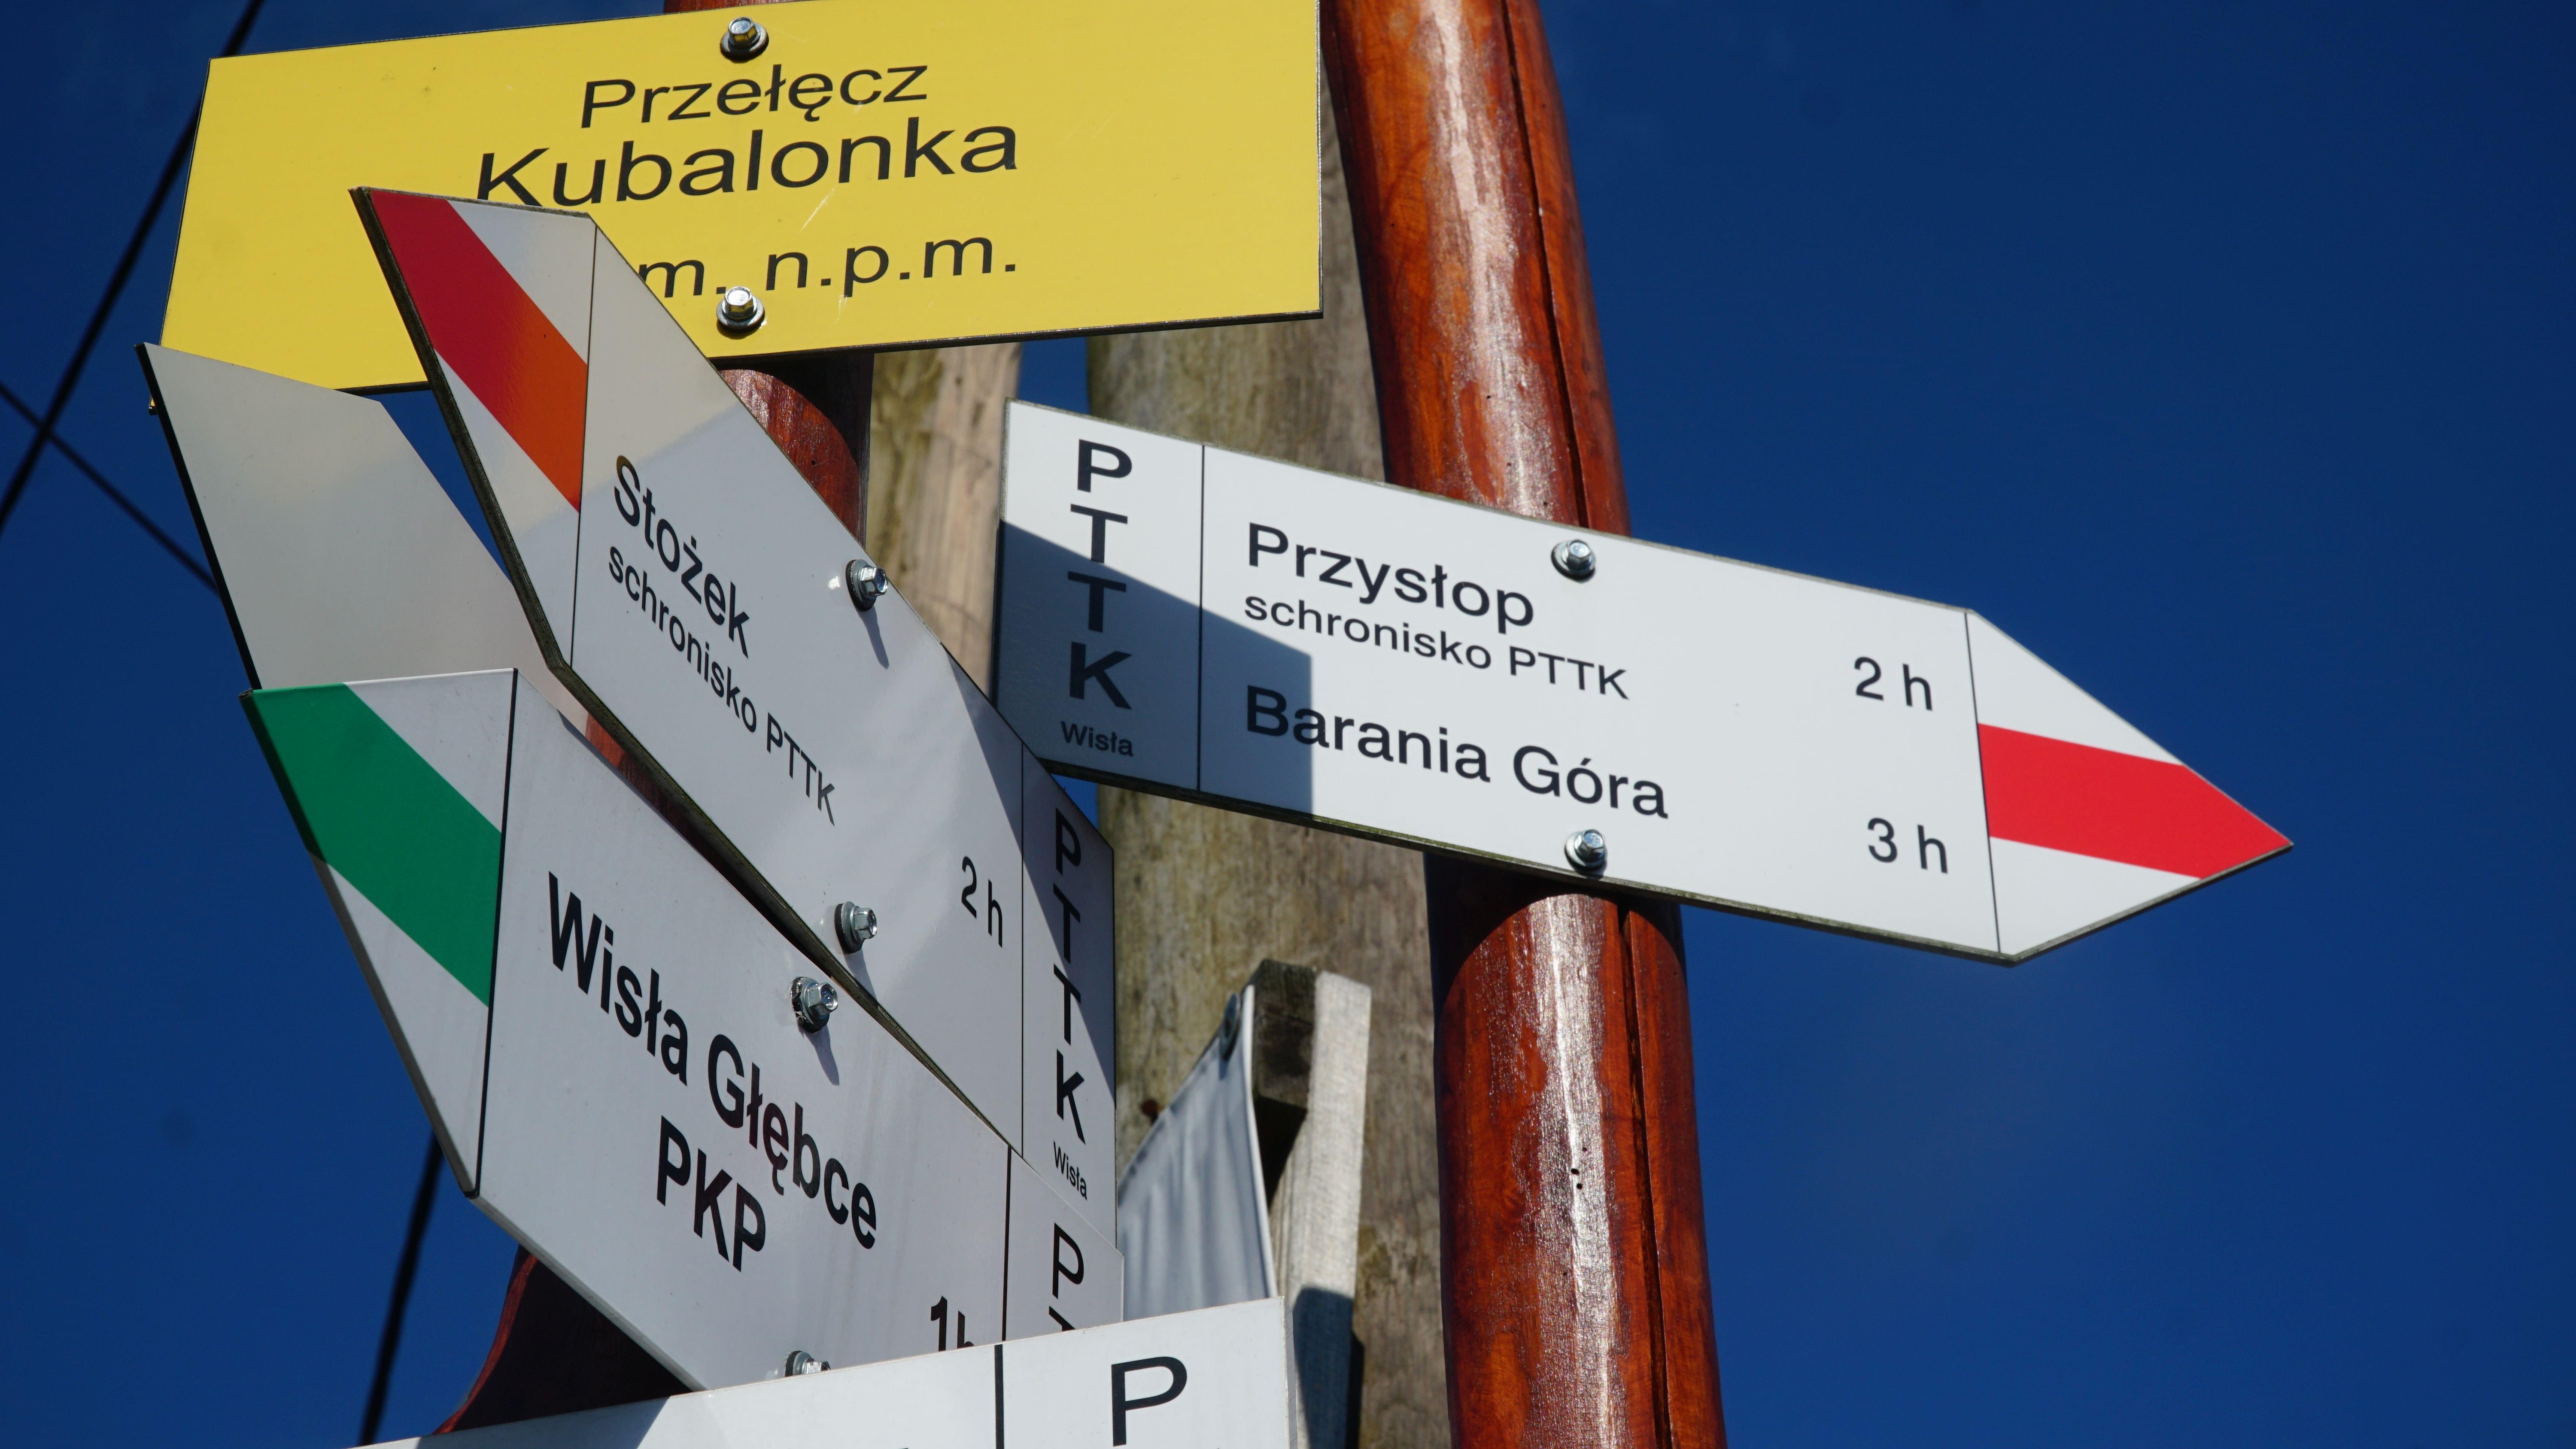 Oznaczenia turystyczne znajdujące się na Przełęczy Kubalonka, wskazujące kierunki między innymi w
stronę Stożka, Wisły-Głębce czy Baraniej Góry.